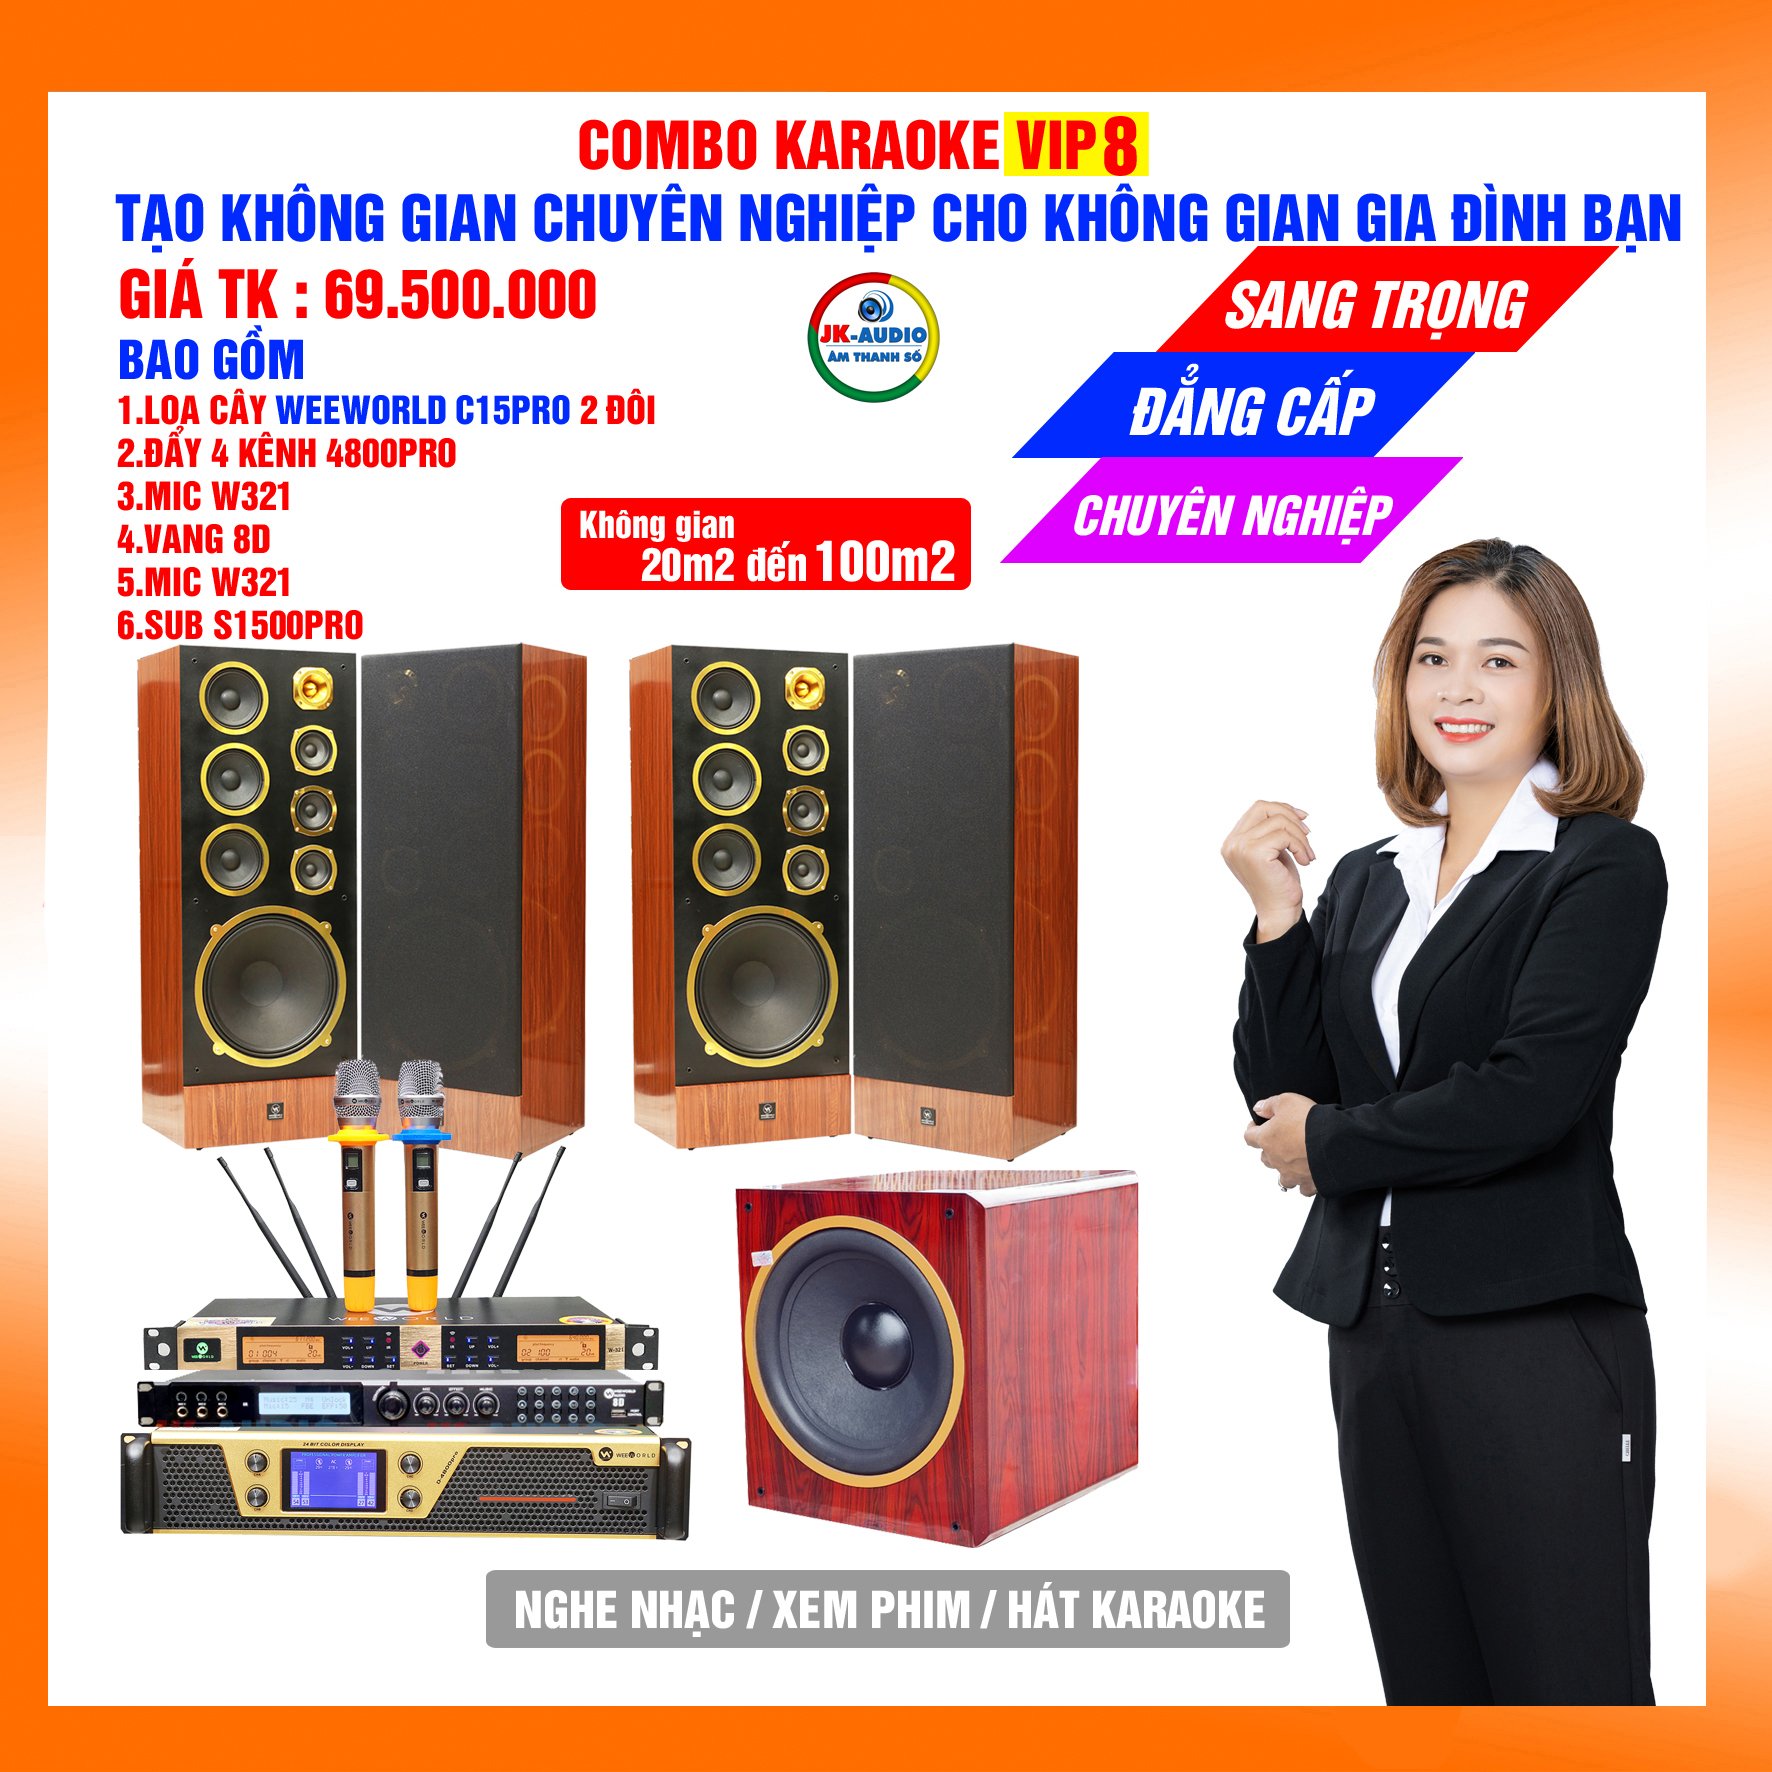 Dàn karaoke gia đình loa C15pro giá 69,5 triệu đồng - Hàng chính hãng